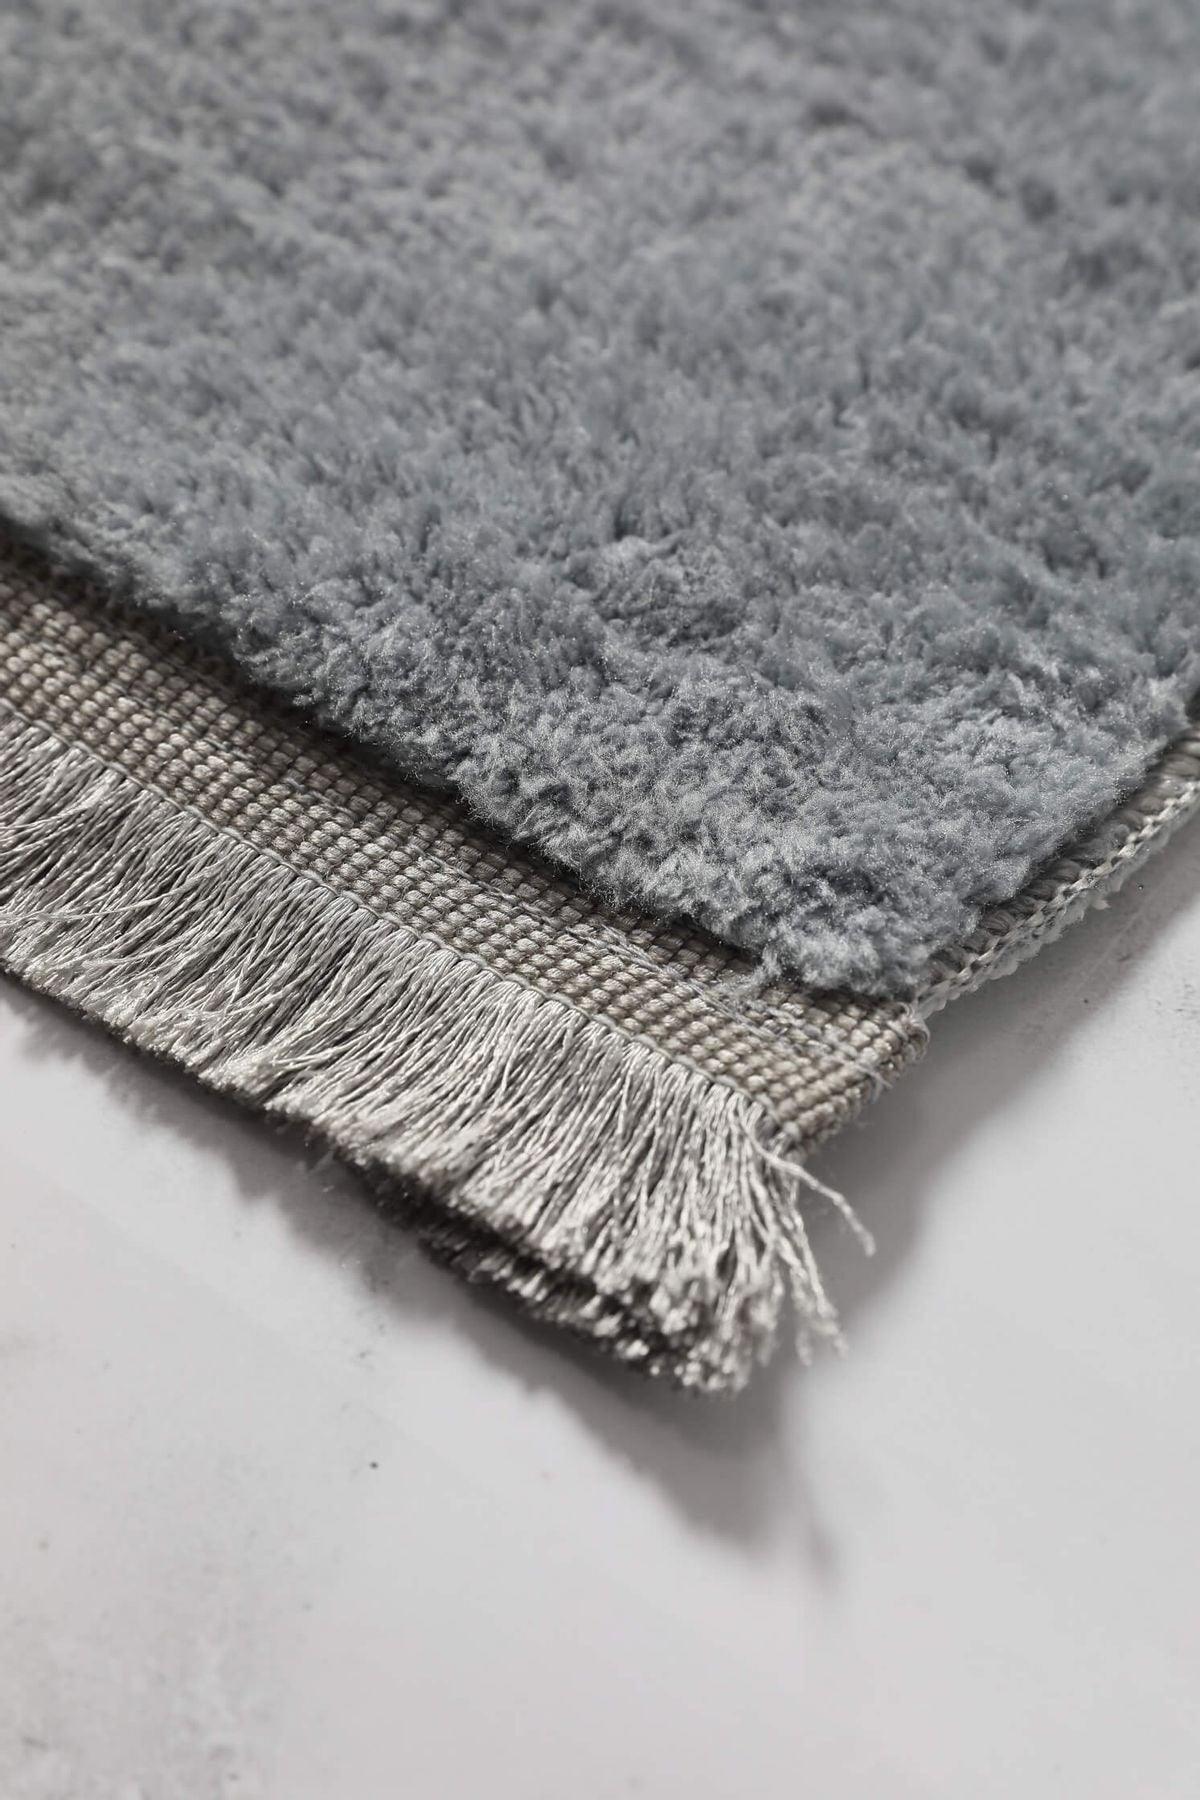 Tasseled Plush Non-Slip Floor Mat Set of 2 - Gray - Swordslife